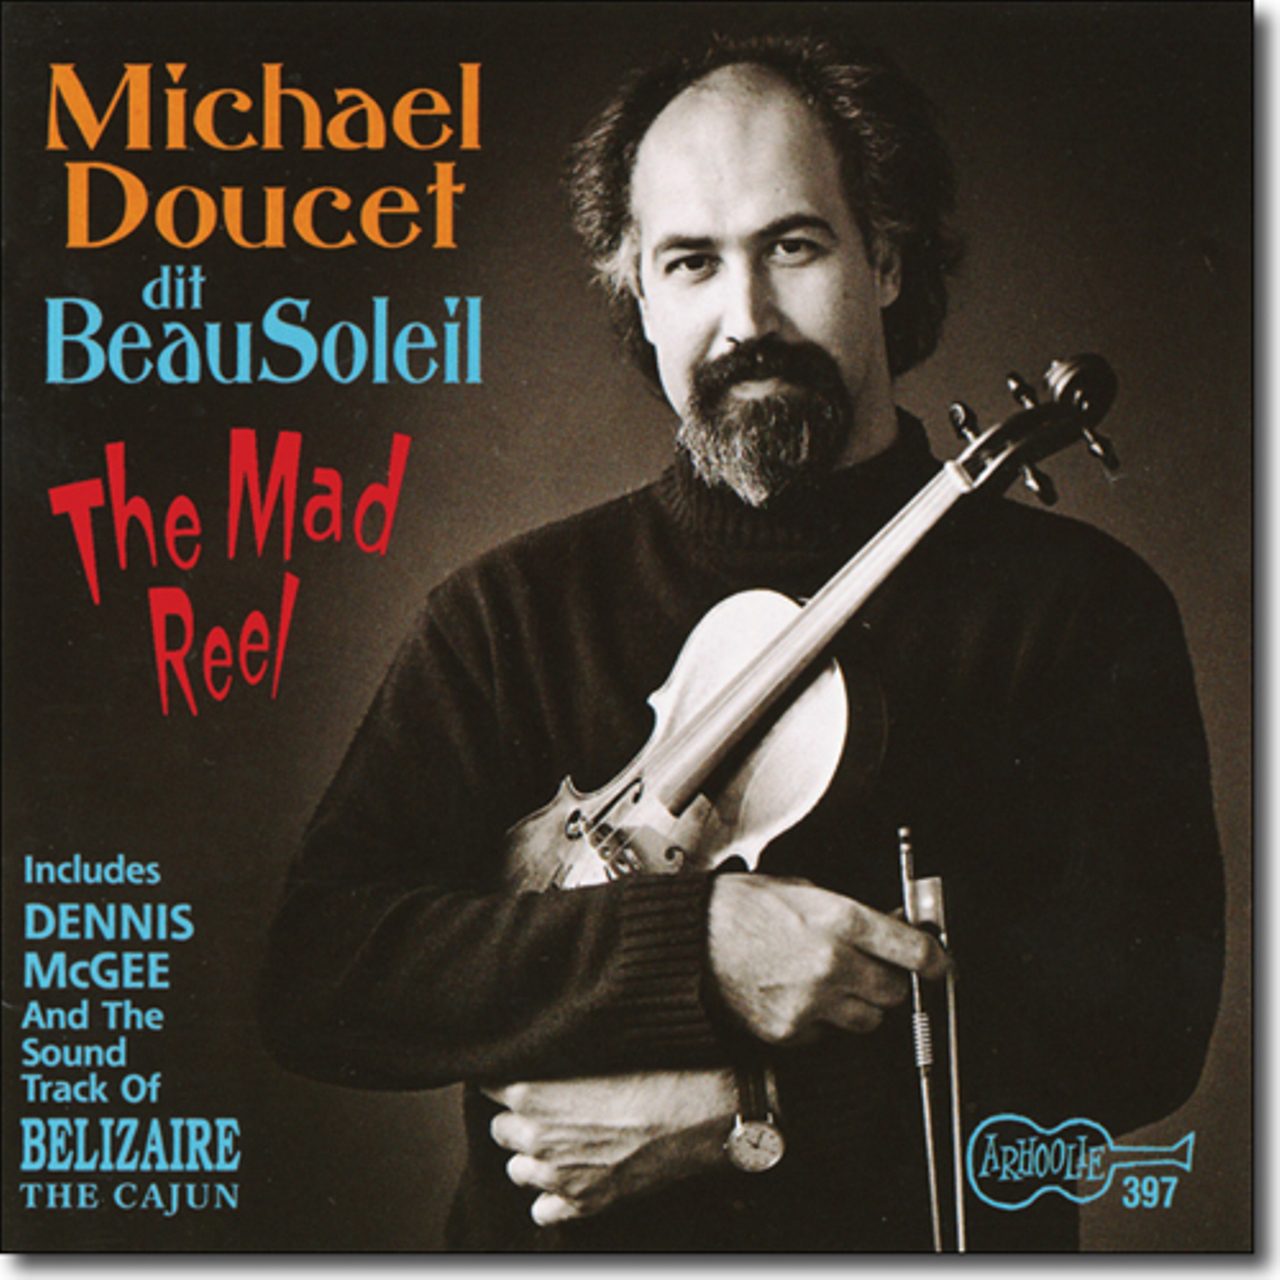 Michael Doucet Dit Beausoleil – The Mad Reel cover album